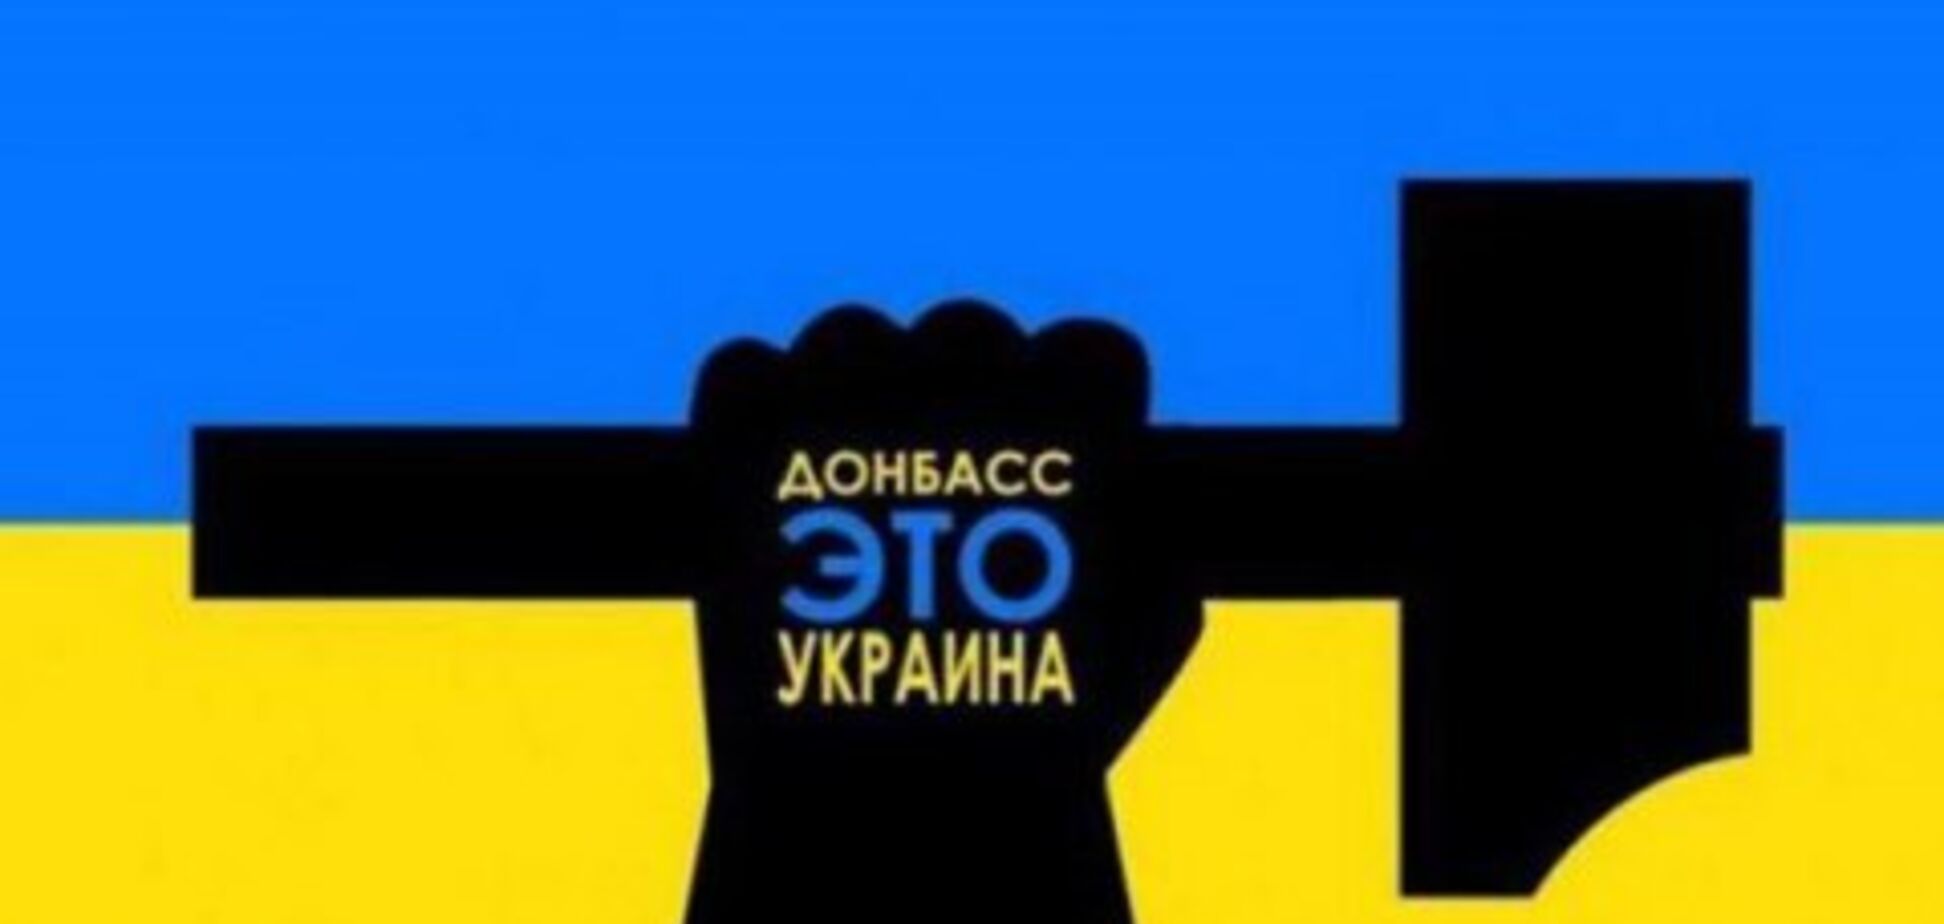 ДНР и ЛНР признали себя Украиной